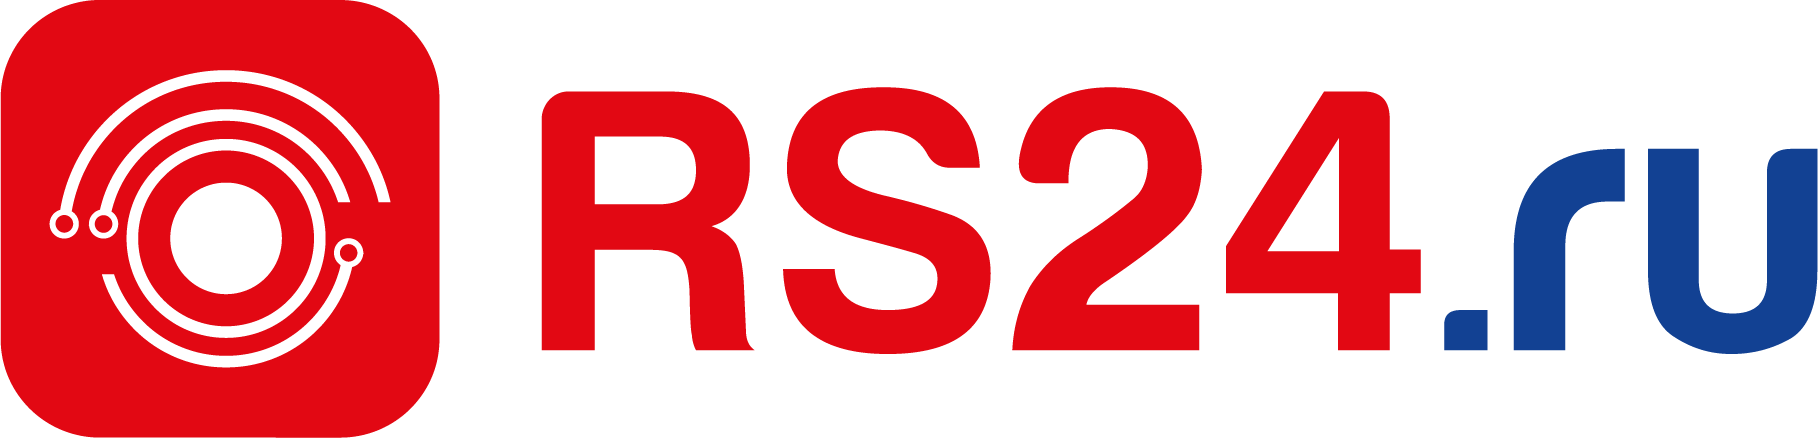 Rs24. Rs24 логотип. Русский свет логотип. RS 24 русский свет. Купить в русском свете